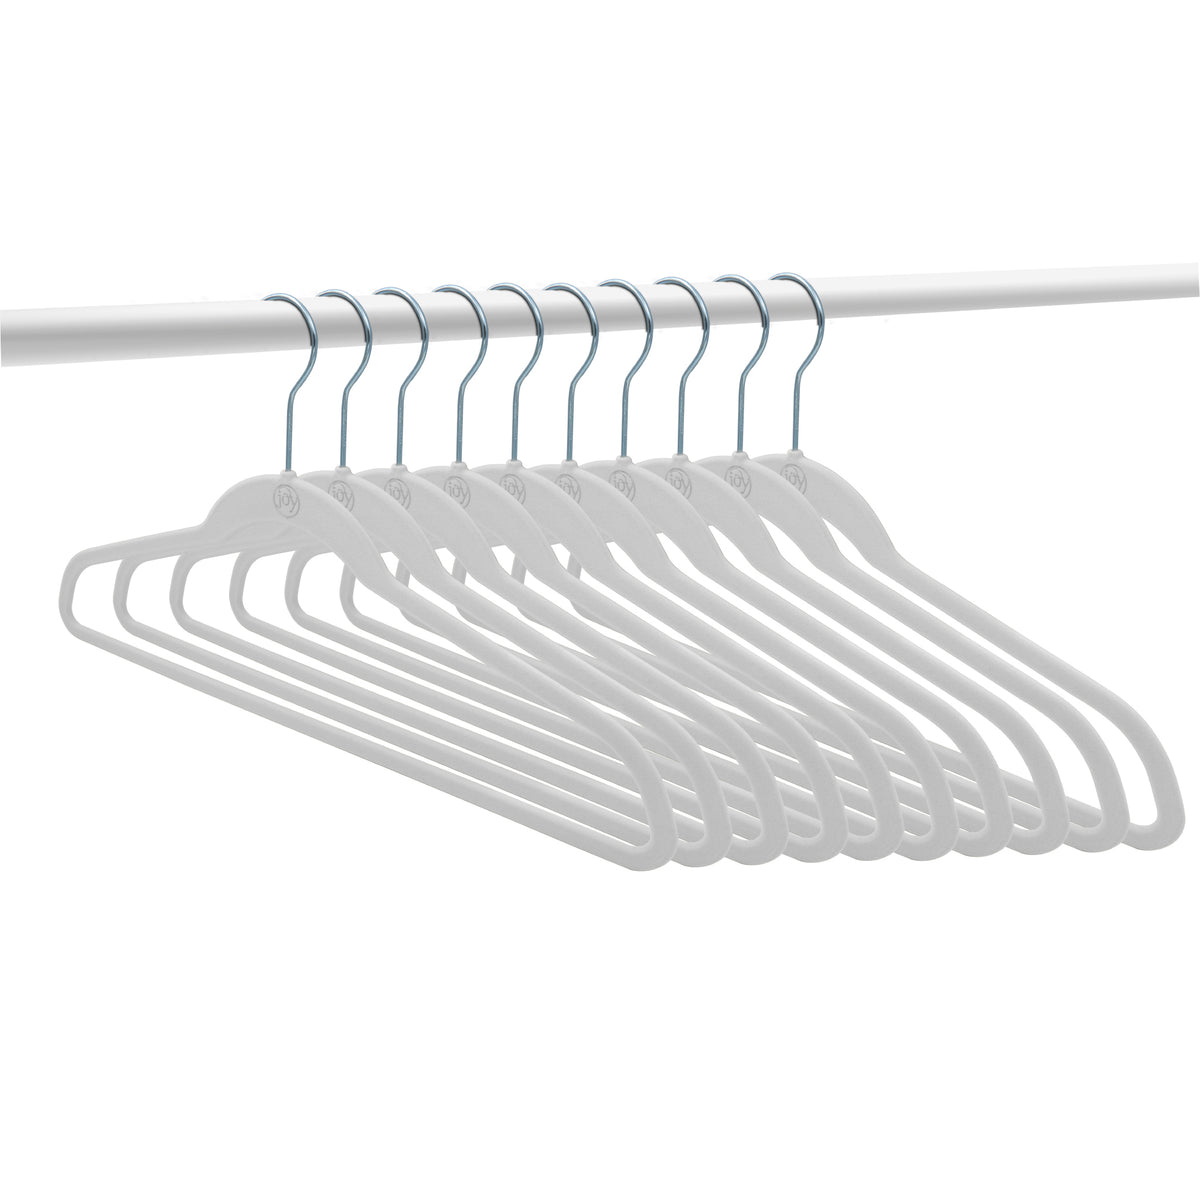 The JOY Hangers Anti-Microbial 37-piece Set with Shelf, Organizer